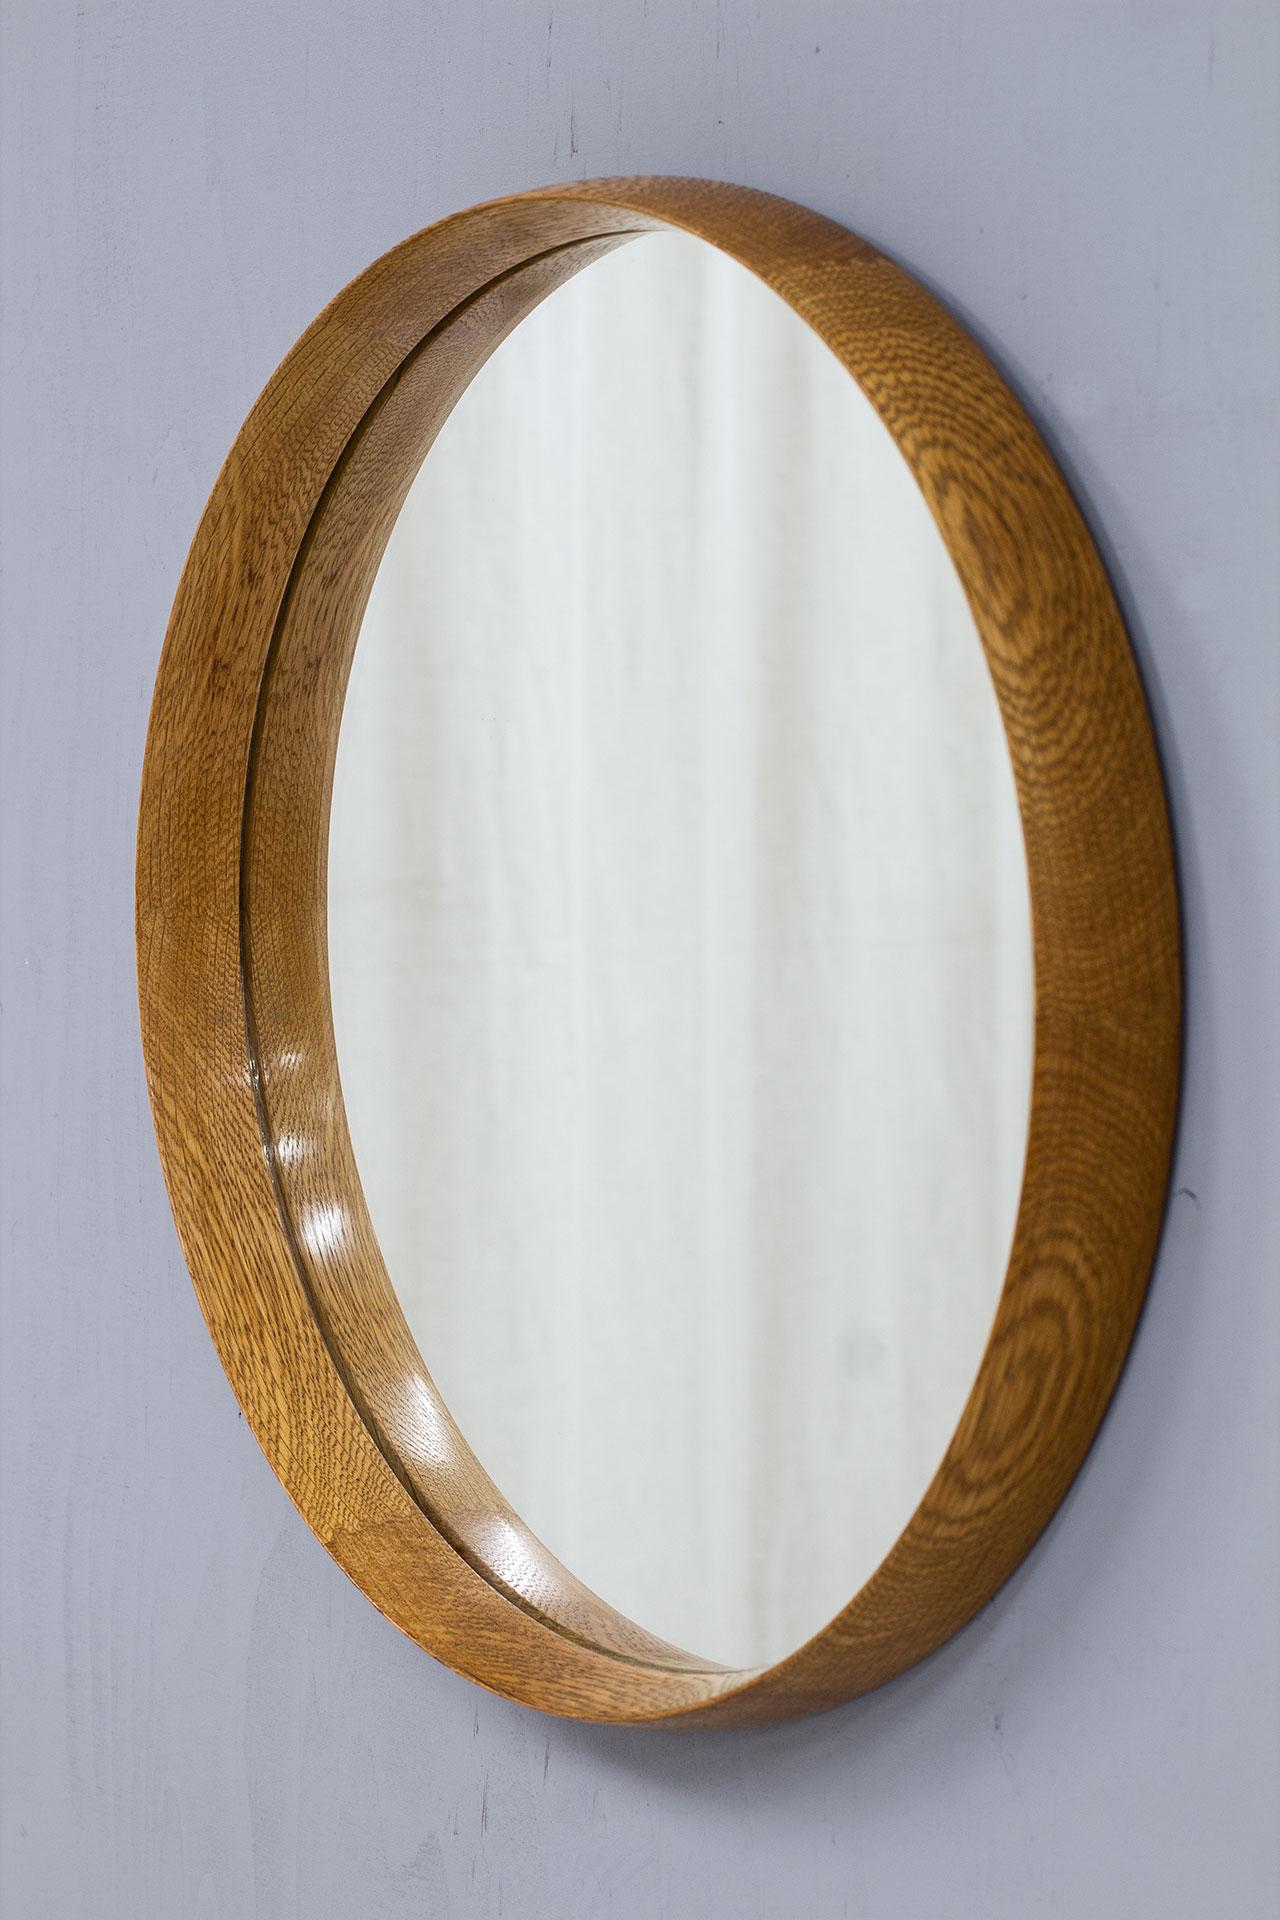 20th Century Scandinavian Modern Oak Wall Mirror by Luxus, 1950s